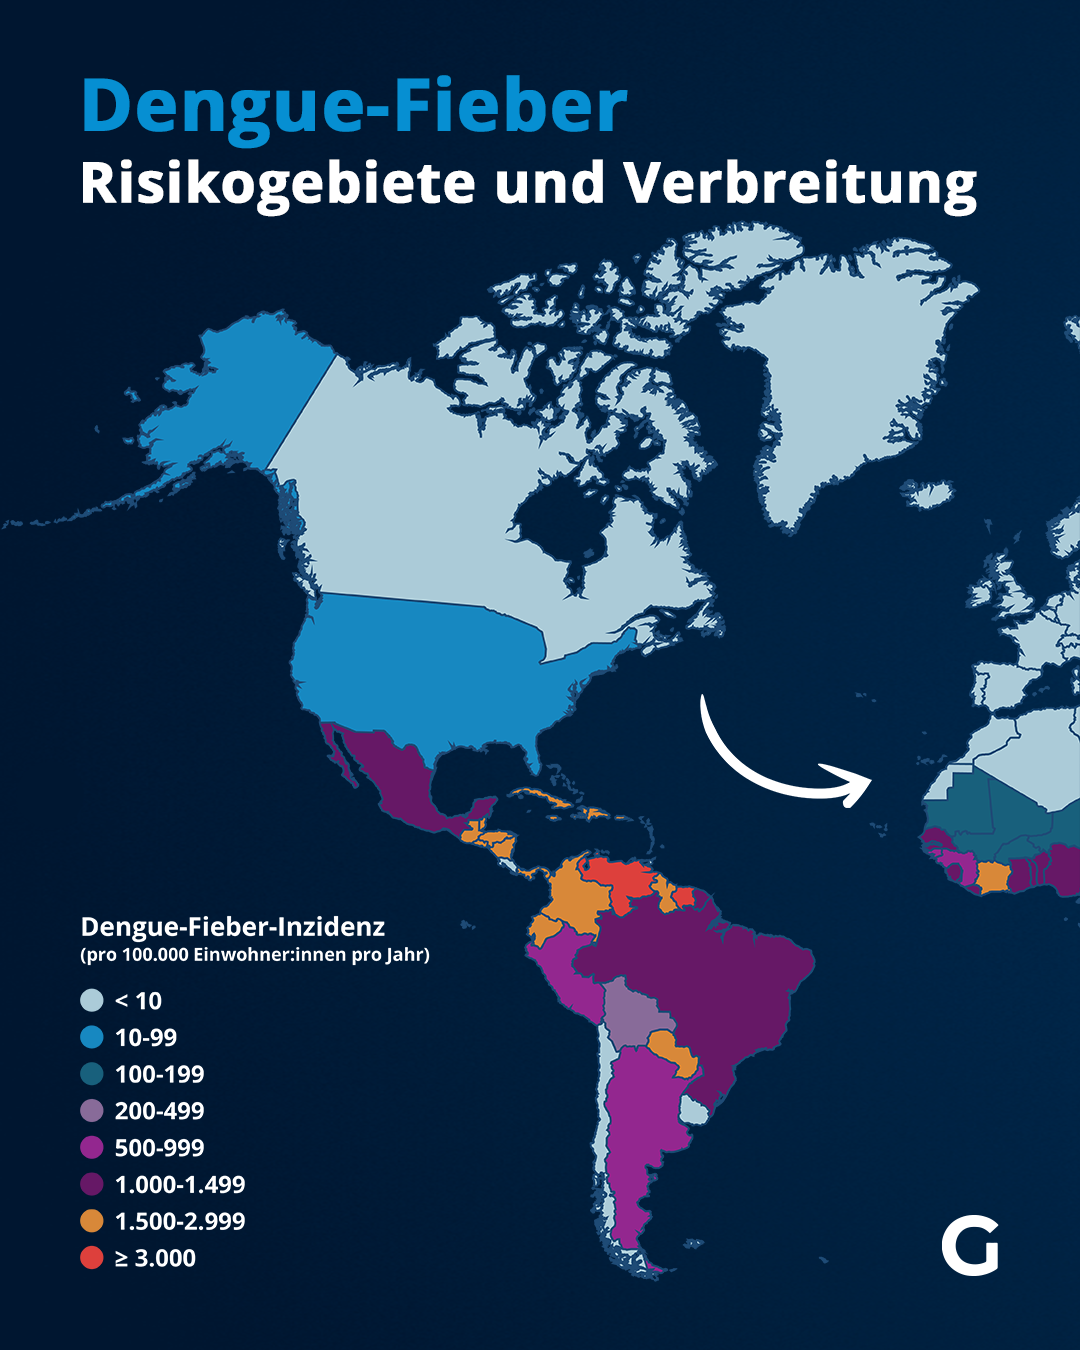 Denguefieber: Verbreitung und Risikogebiete